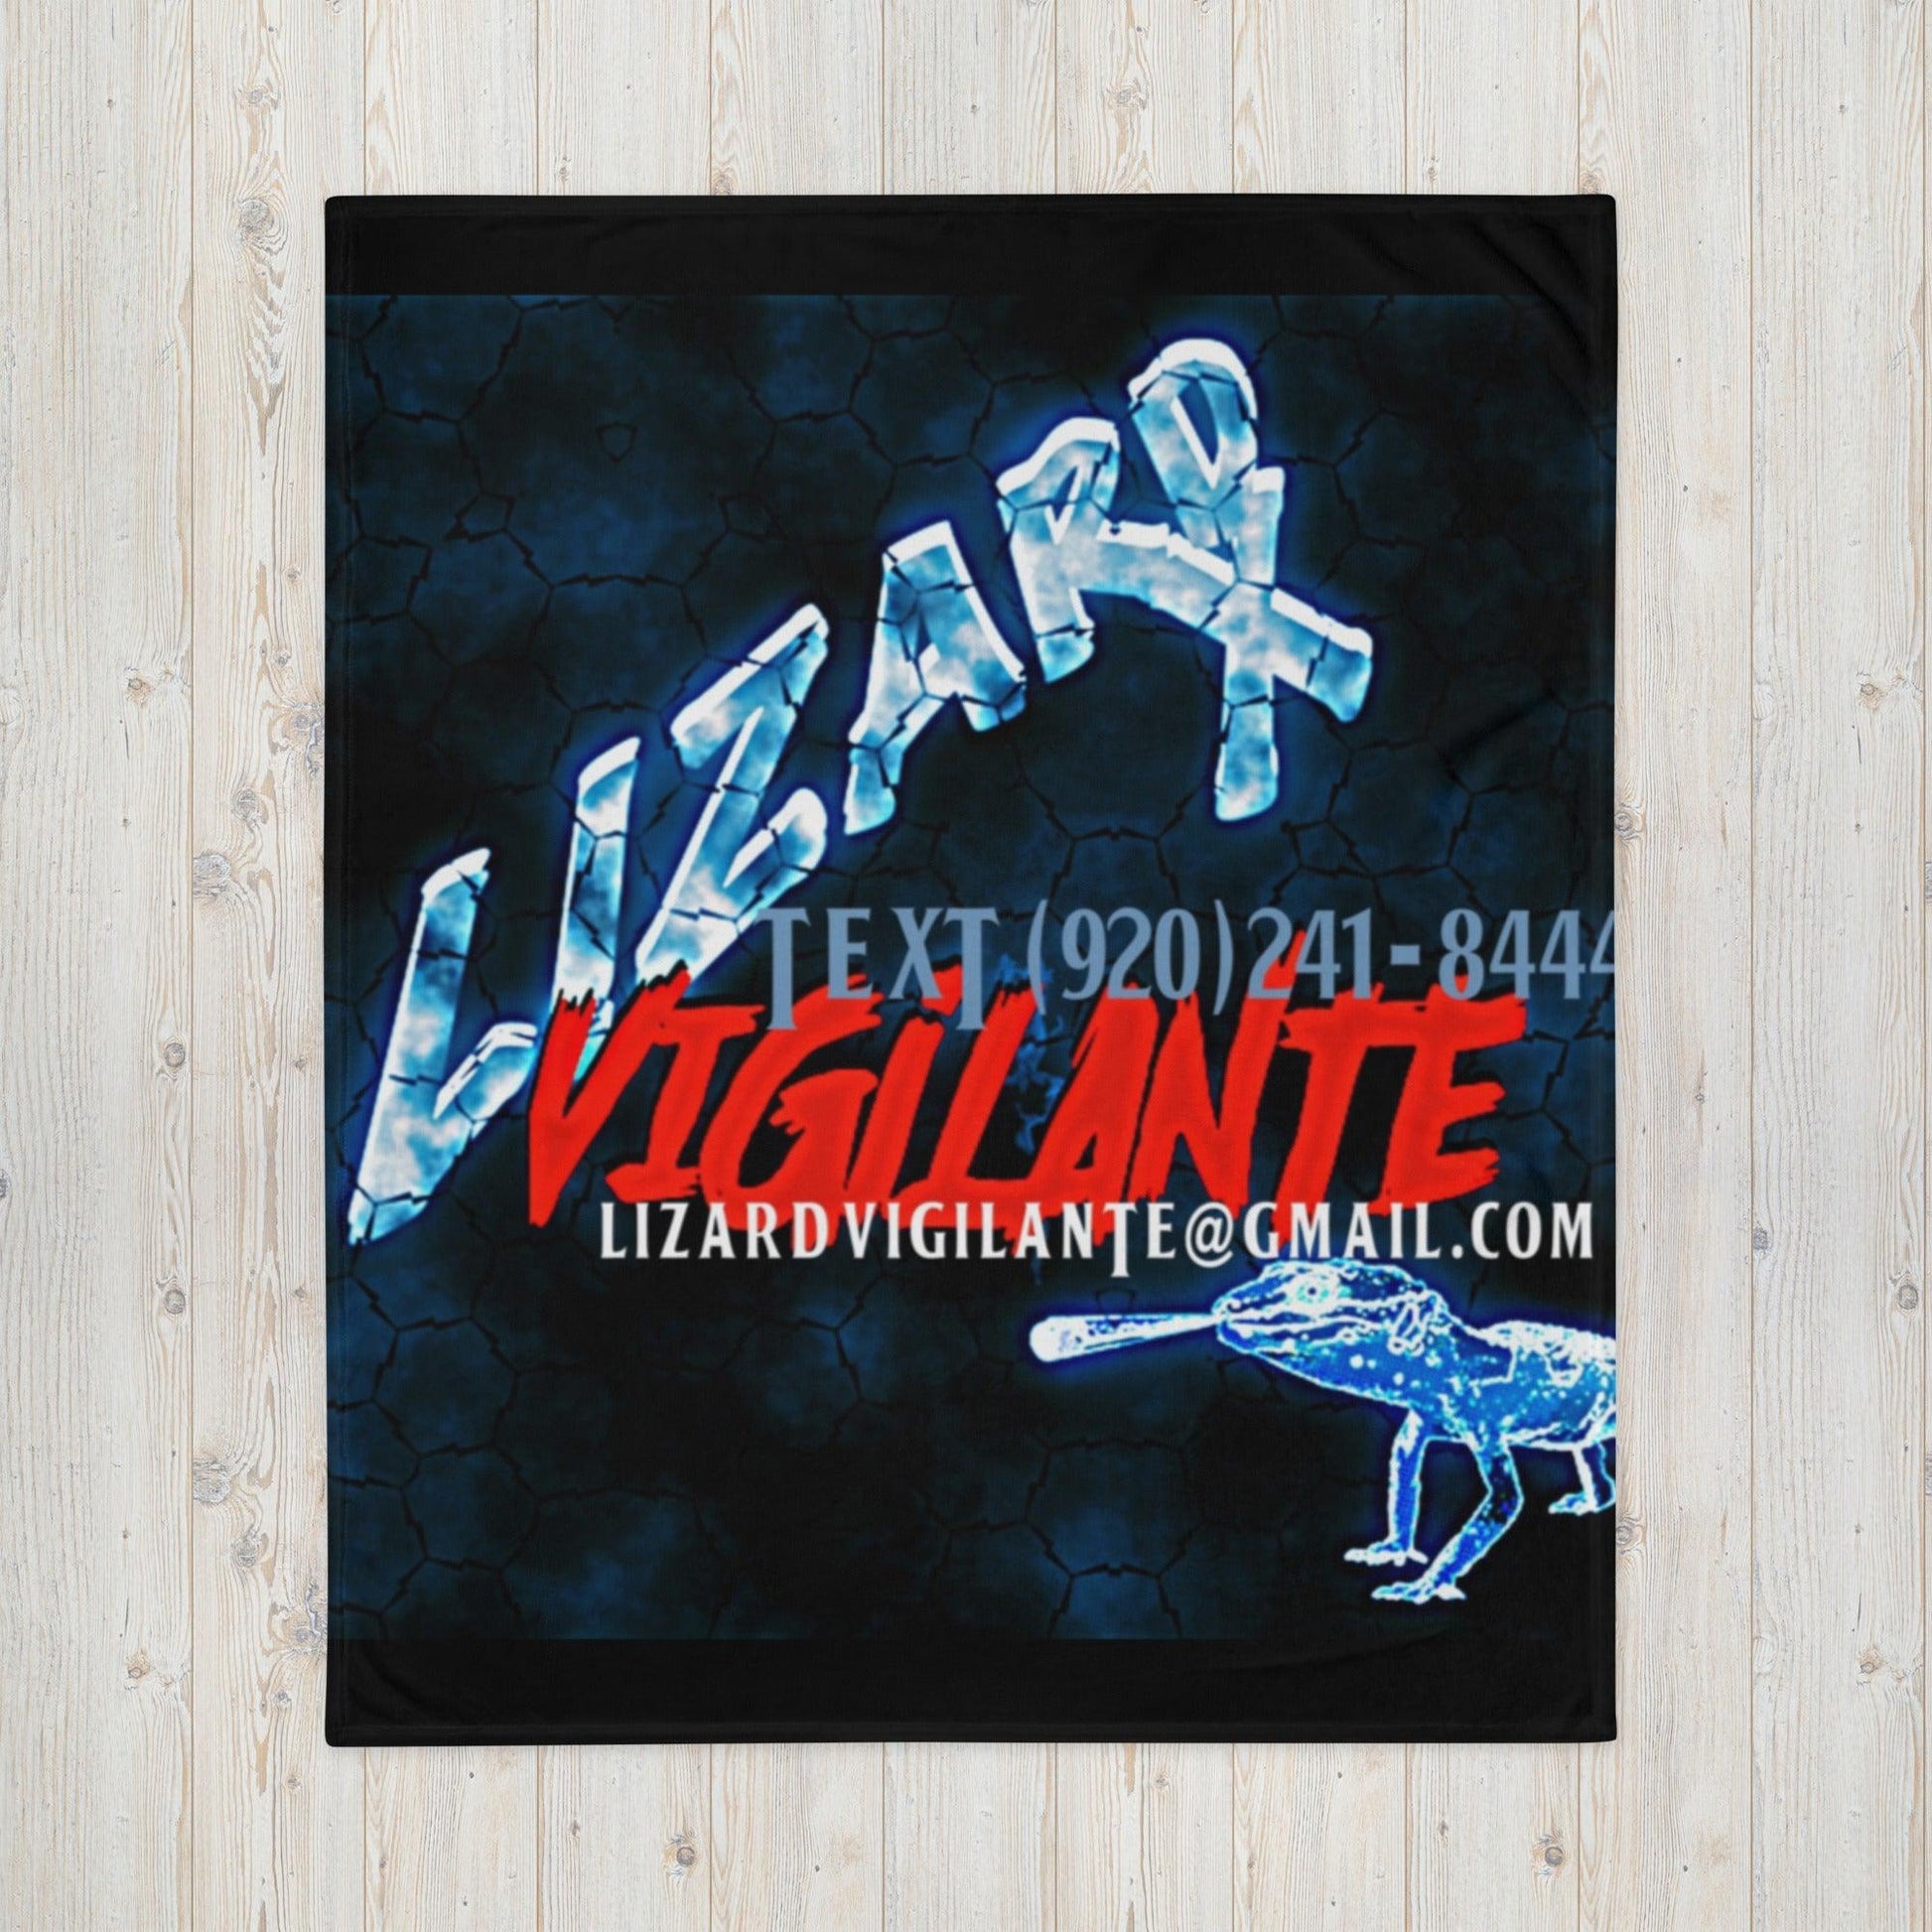 Lizard Vigilante Throw Blanket Bed Covers - Lizard Vigilante